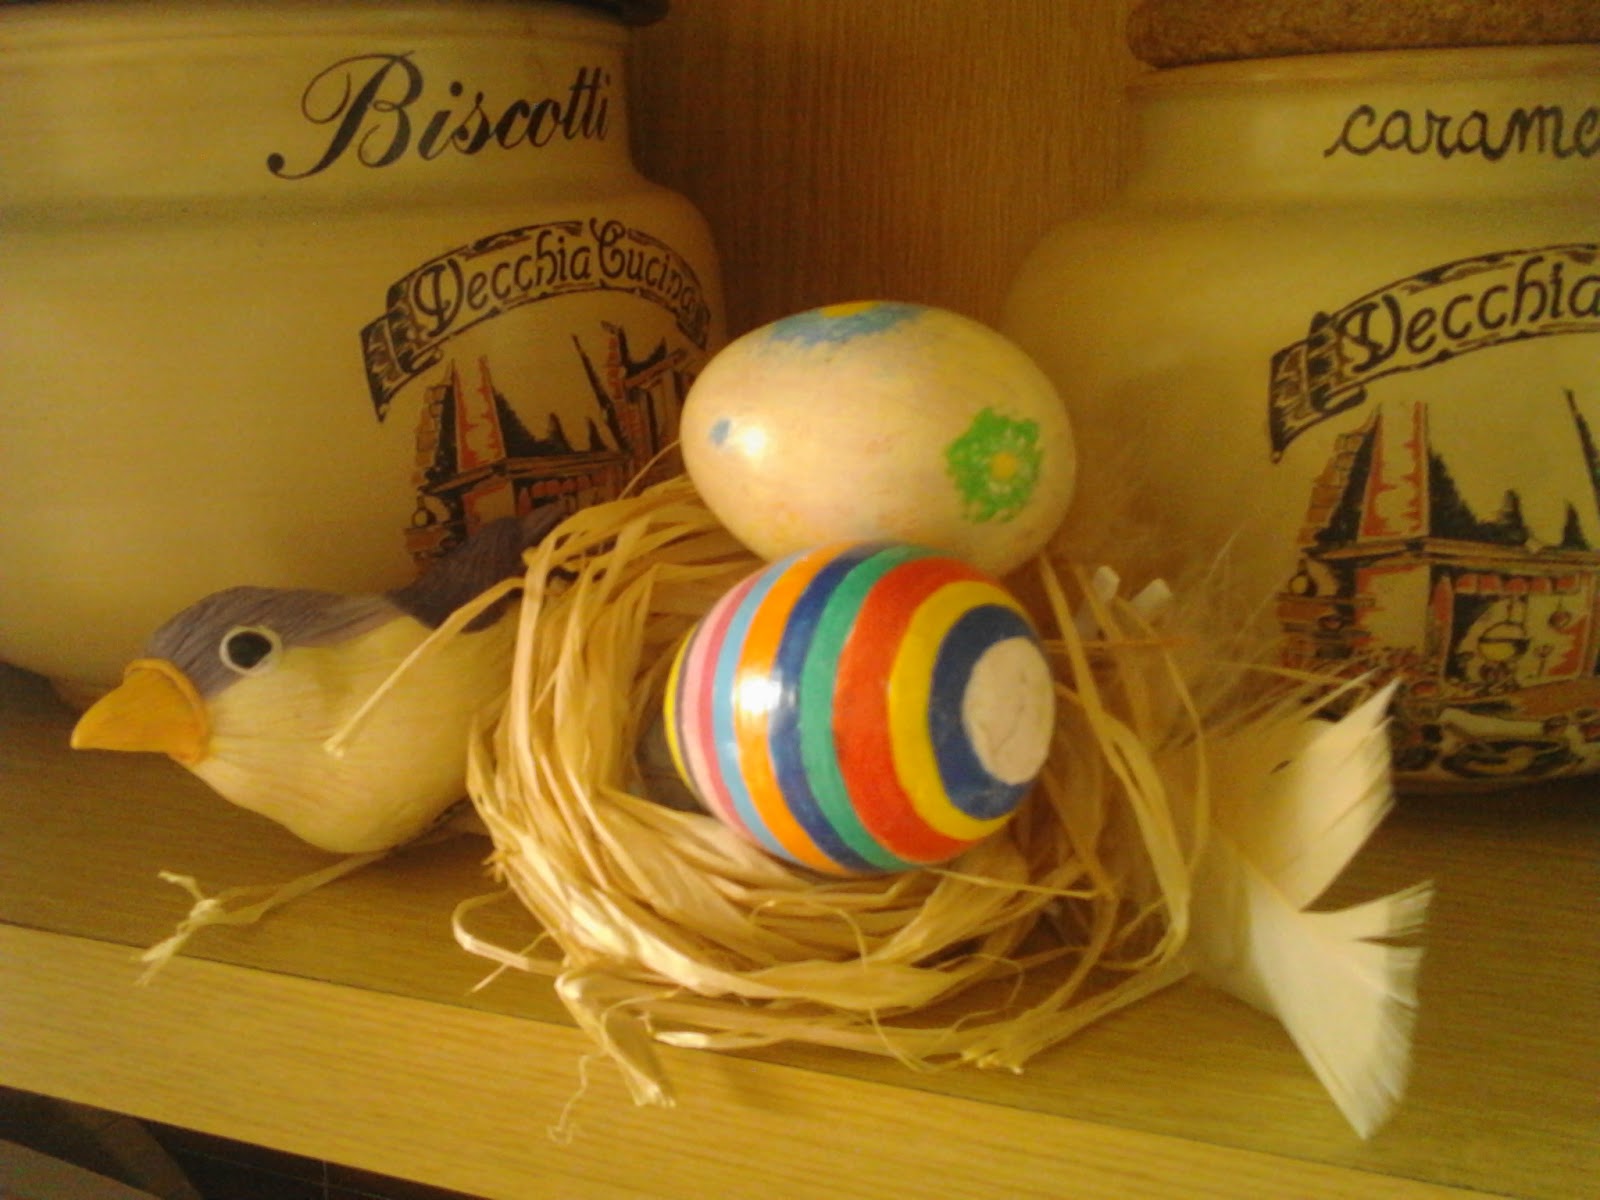 Pasqua ¨ gi  passata e ricordo mi sono rimaste queste uova dipinte con colori acrilici e poi lucidate con uno spray protettivo Le ho posizionate dentro